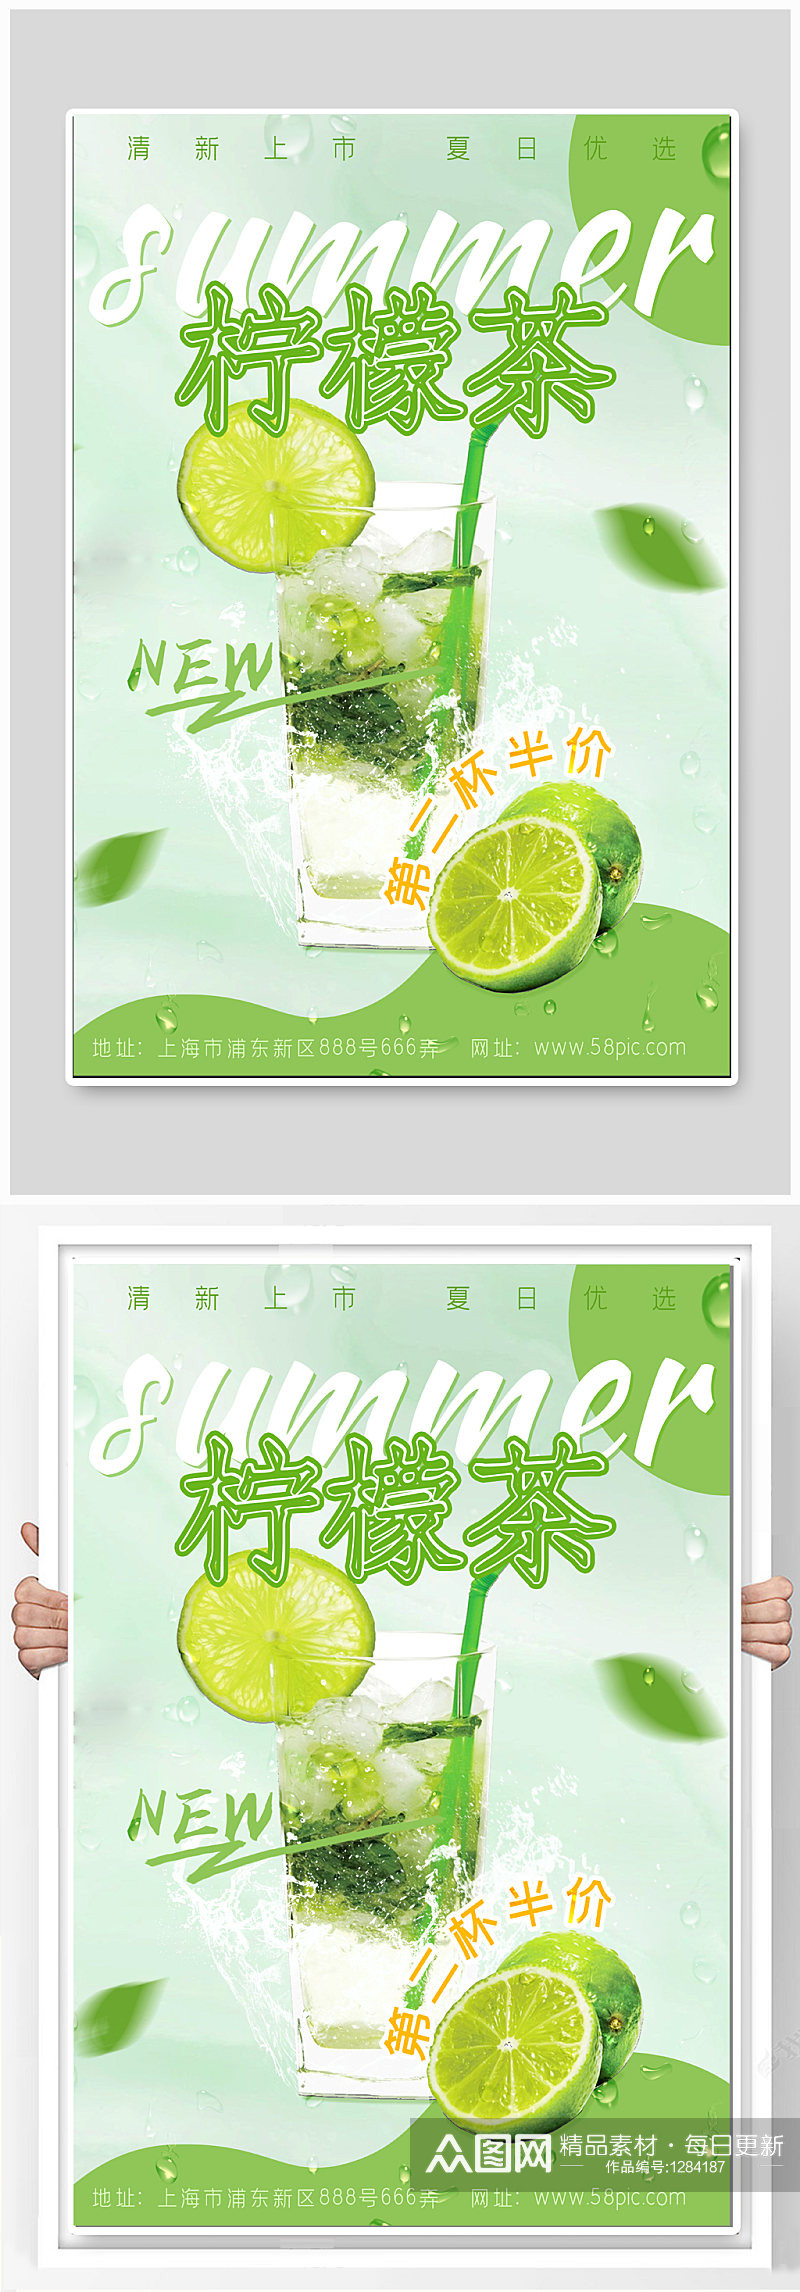 柠檬茶饮品宣传海报素材